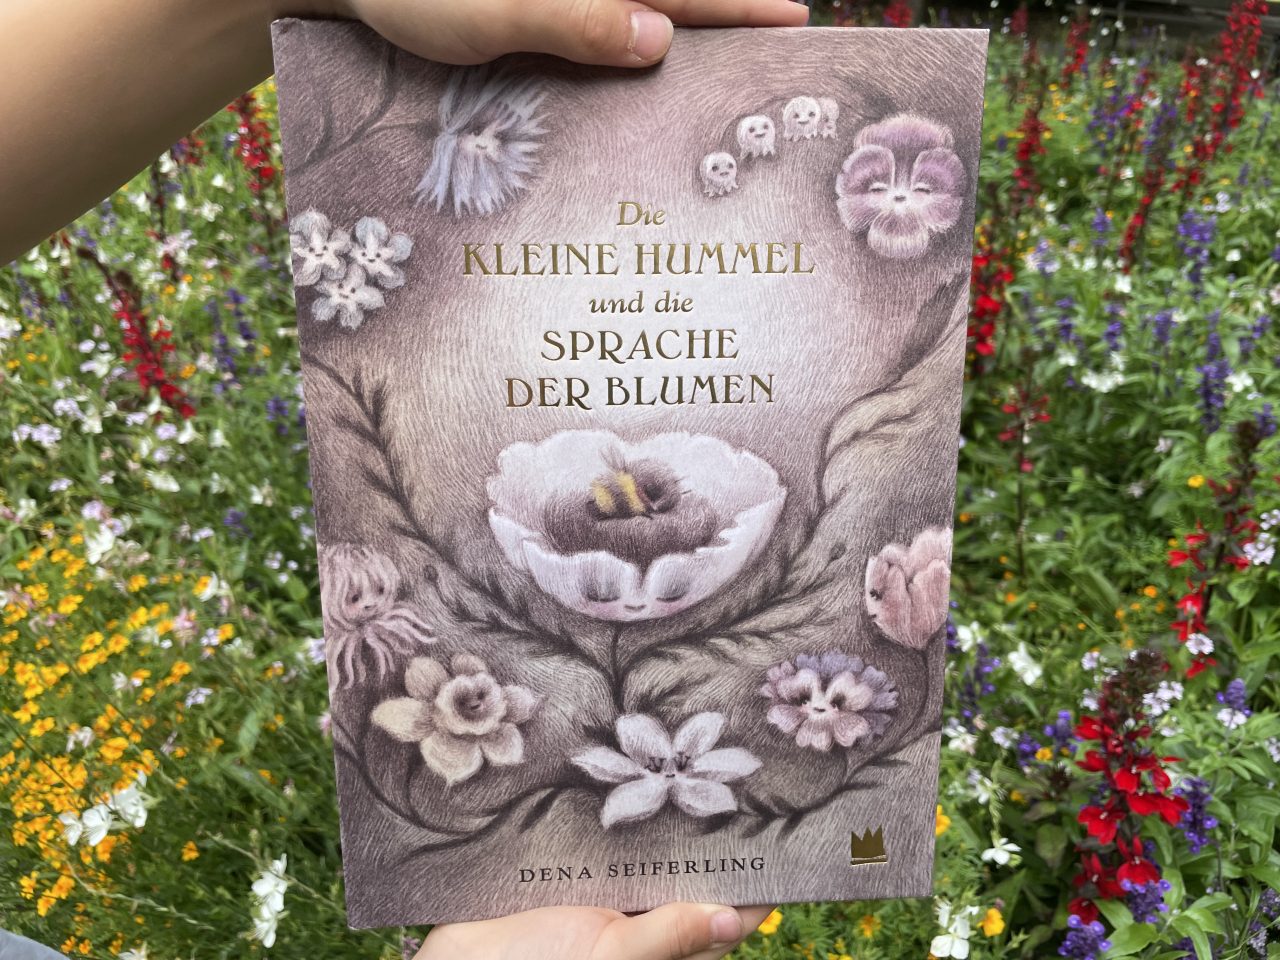 das Kinderbuch "Die kleine Hummel und die Sprache der Blumen" gehalten von zwei Kinderhänden vor einer blühenden Blumenwiese